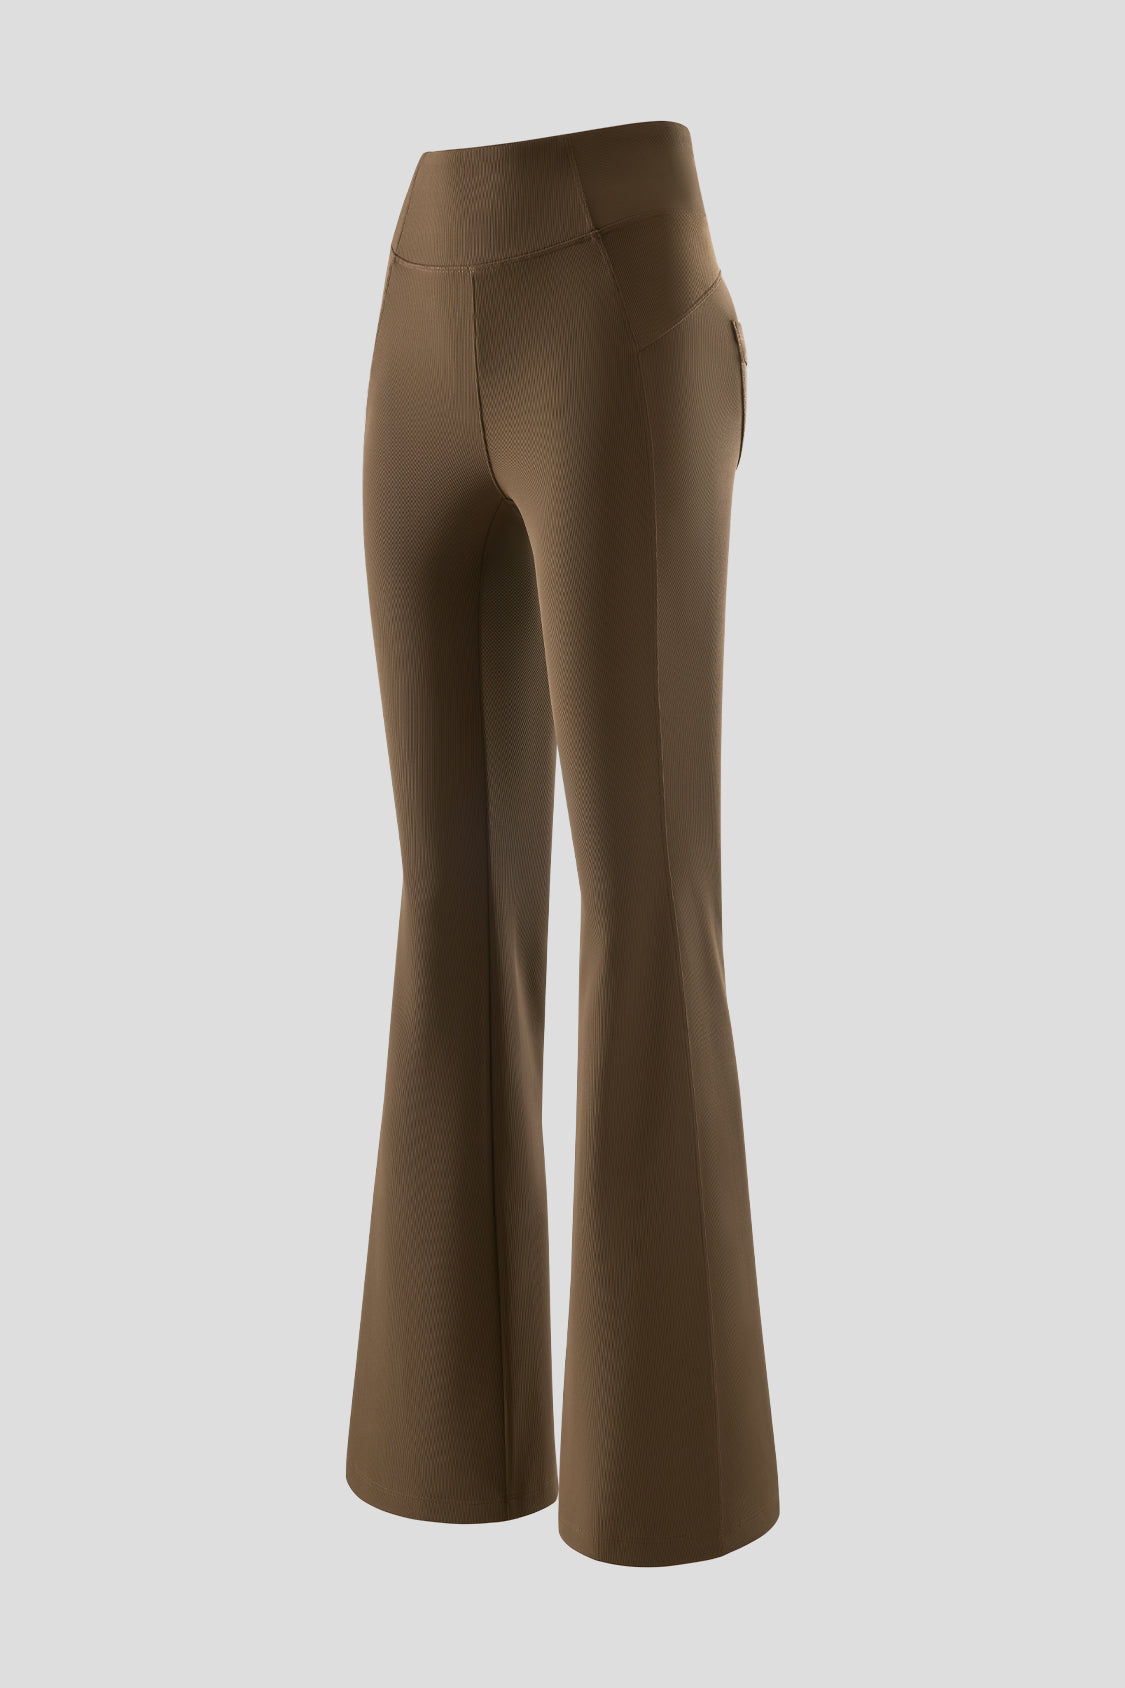 beneunder women's high-waist pants #color_truffle brown